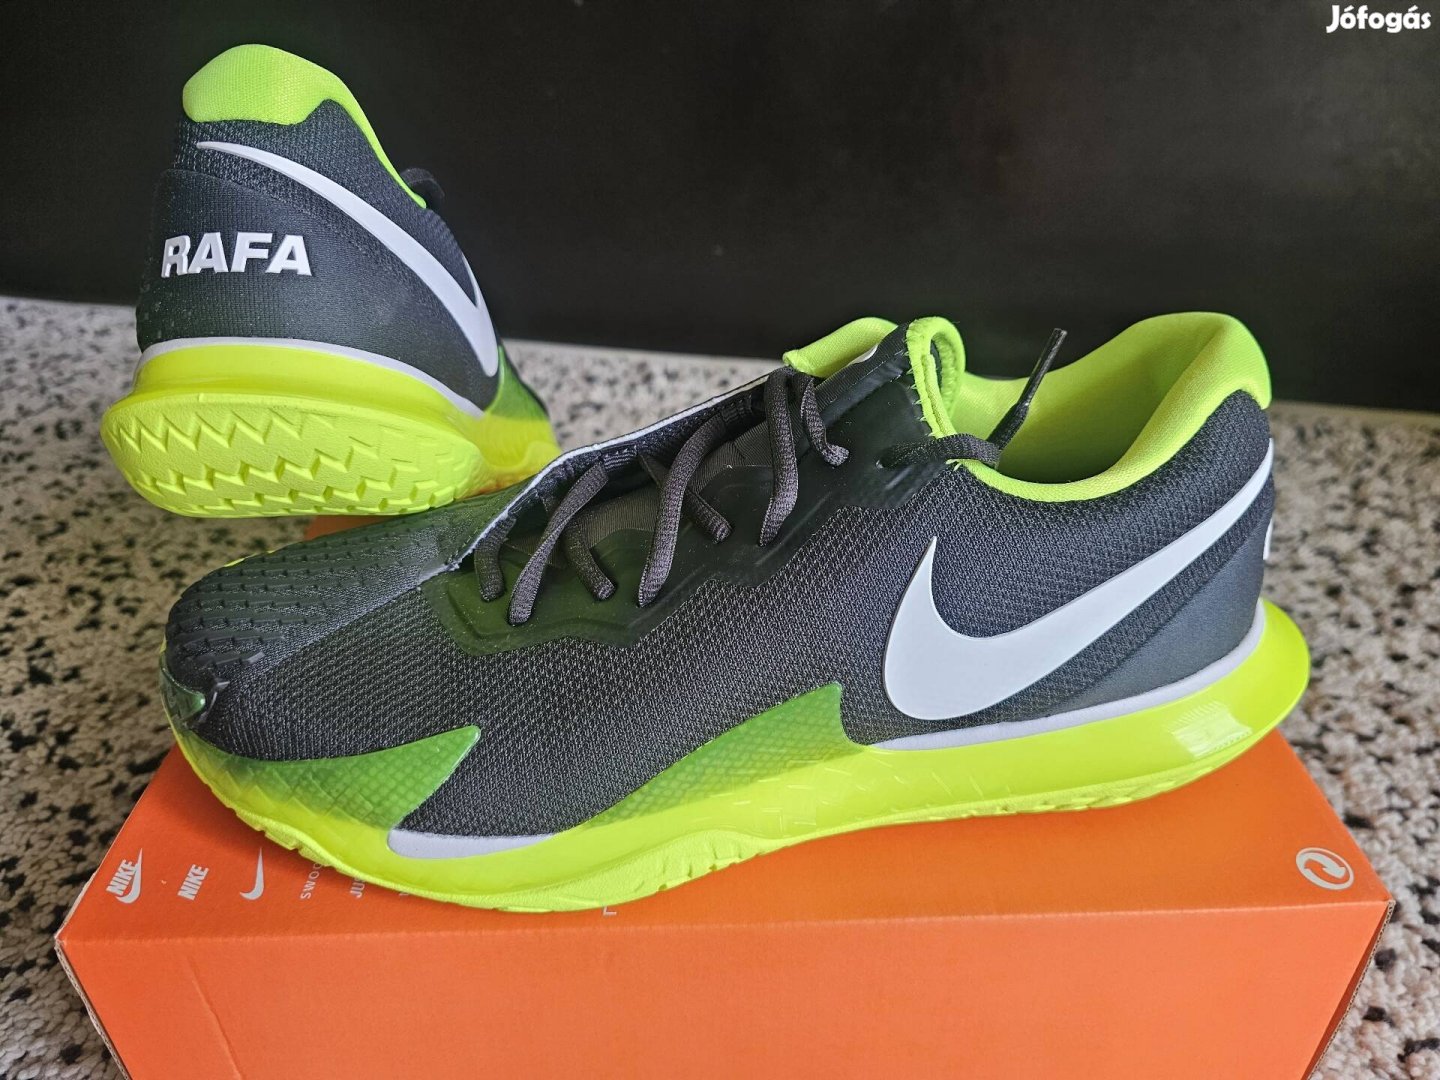 Nike Air Zoom Vapor Cage 4 Rafa férfi 45-ös tenisz cipő.